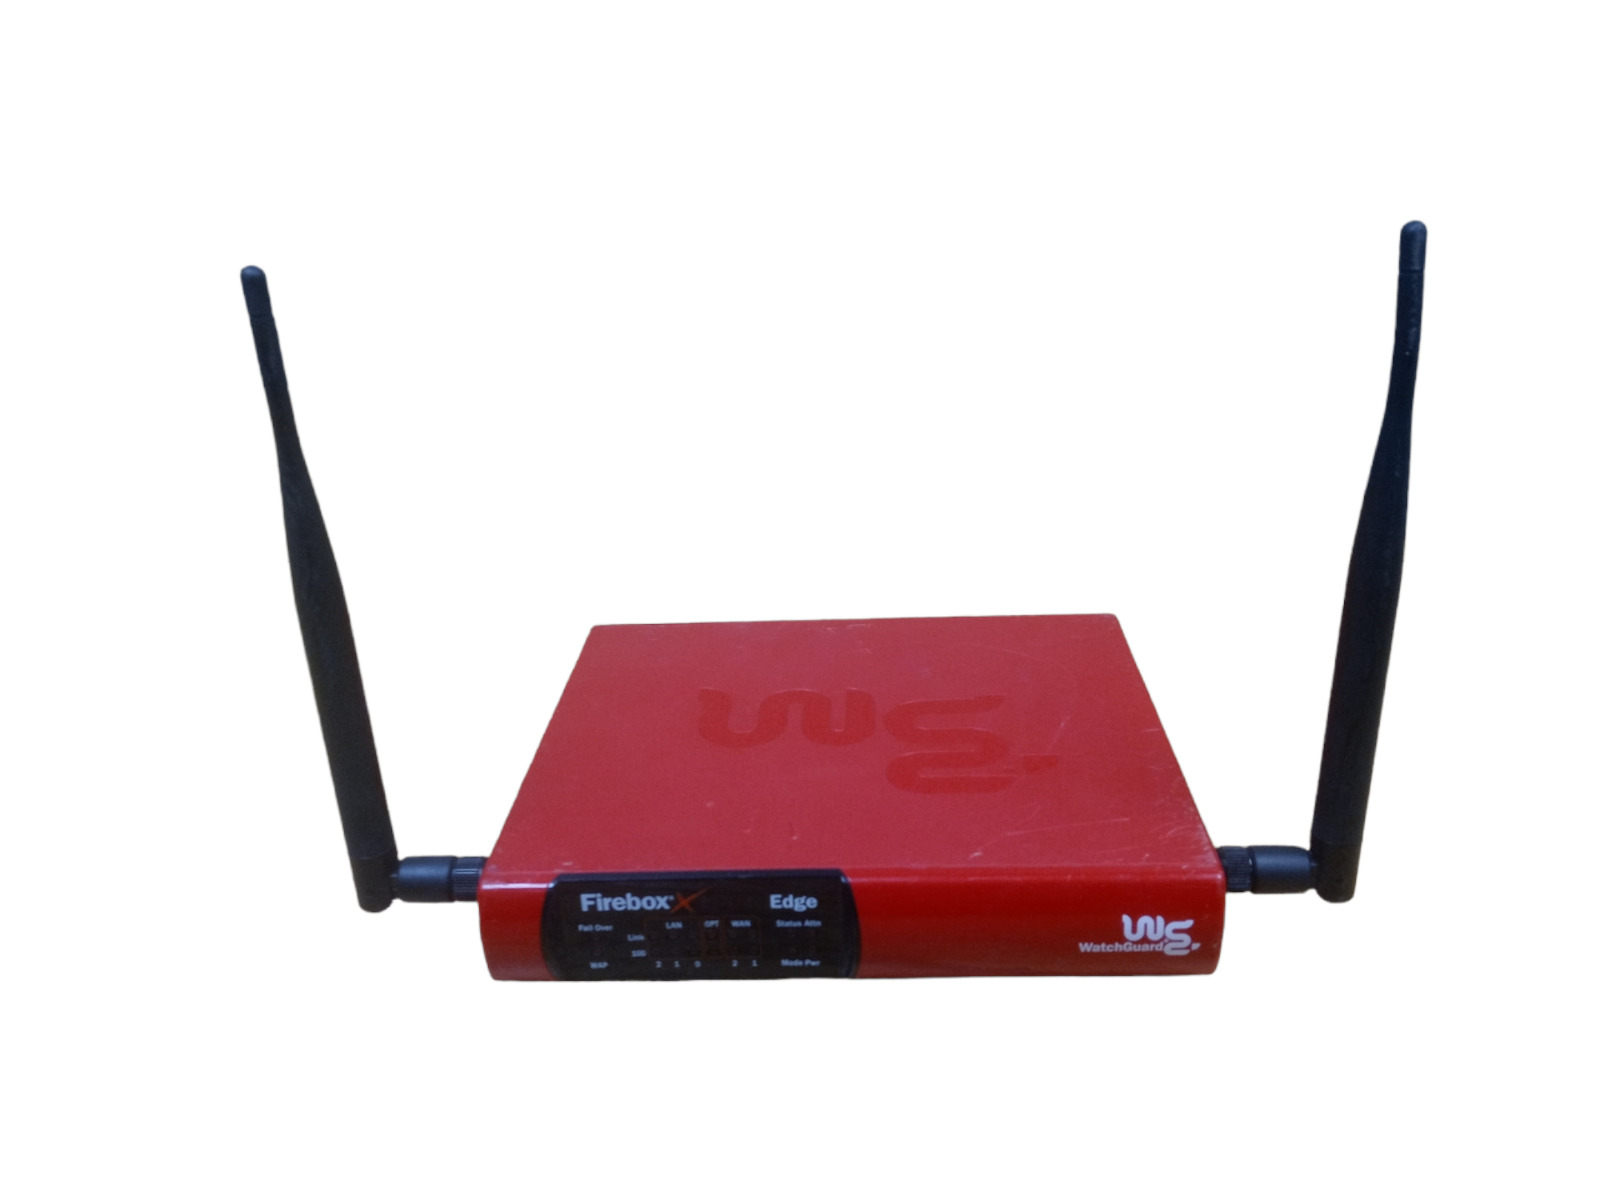 Firebox X10eW XP2E6W WatchGuard Edge VPN FireWall Wireless Router No Adapter